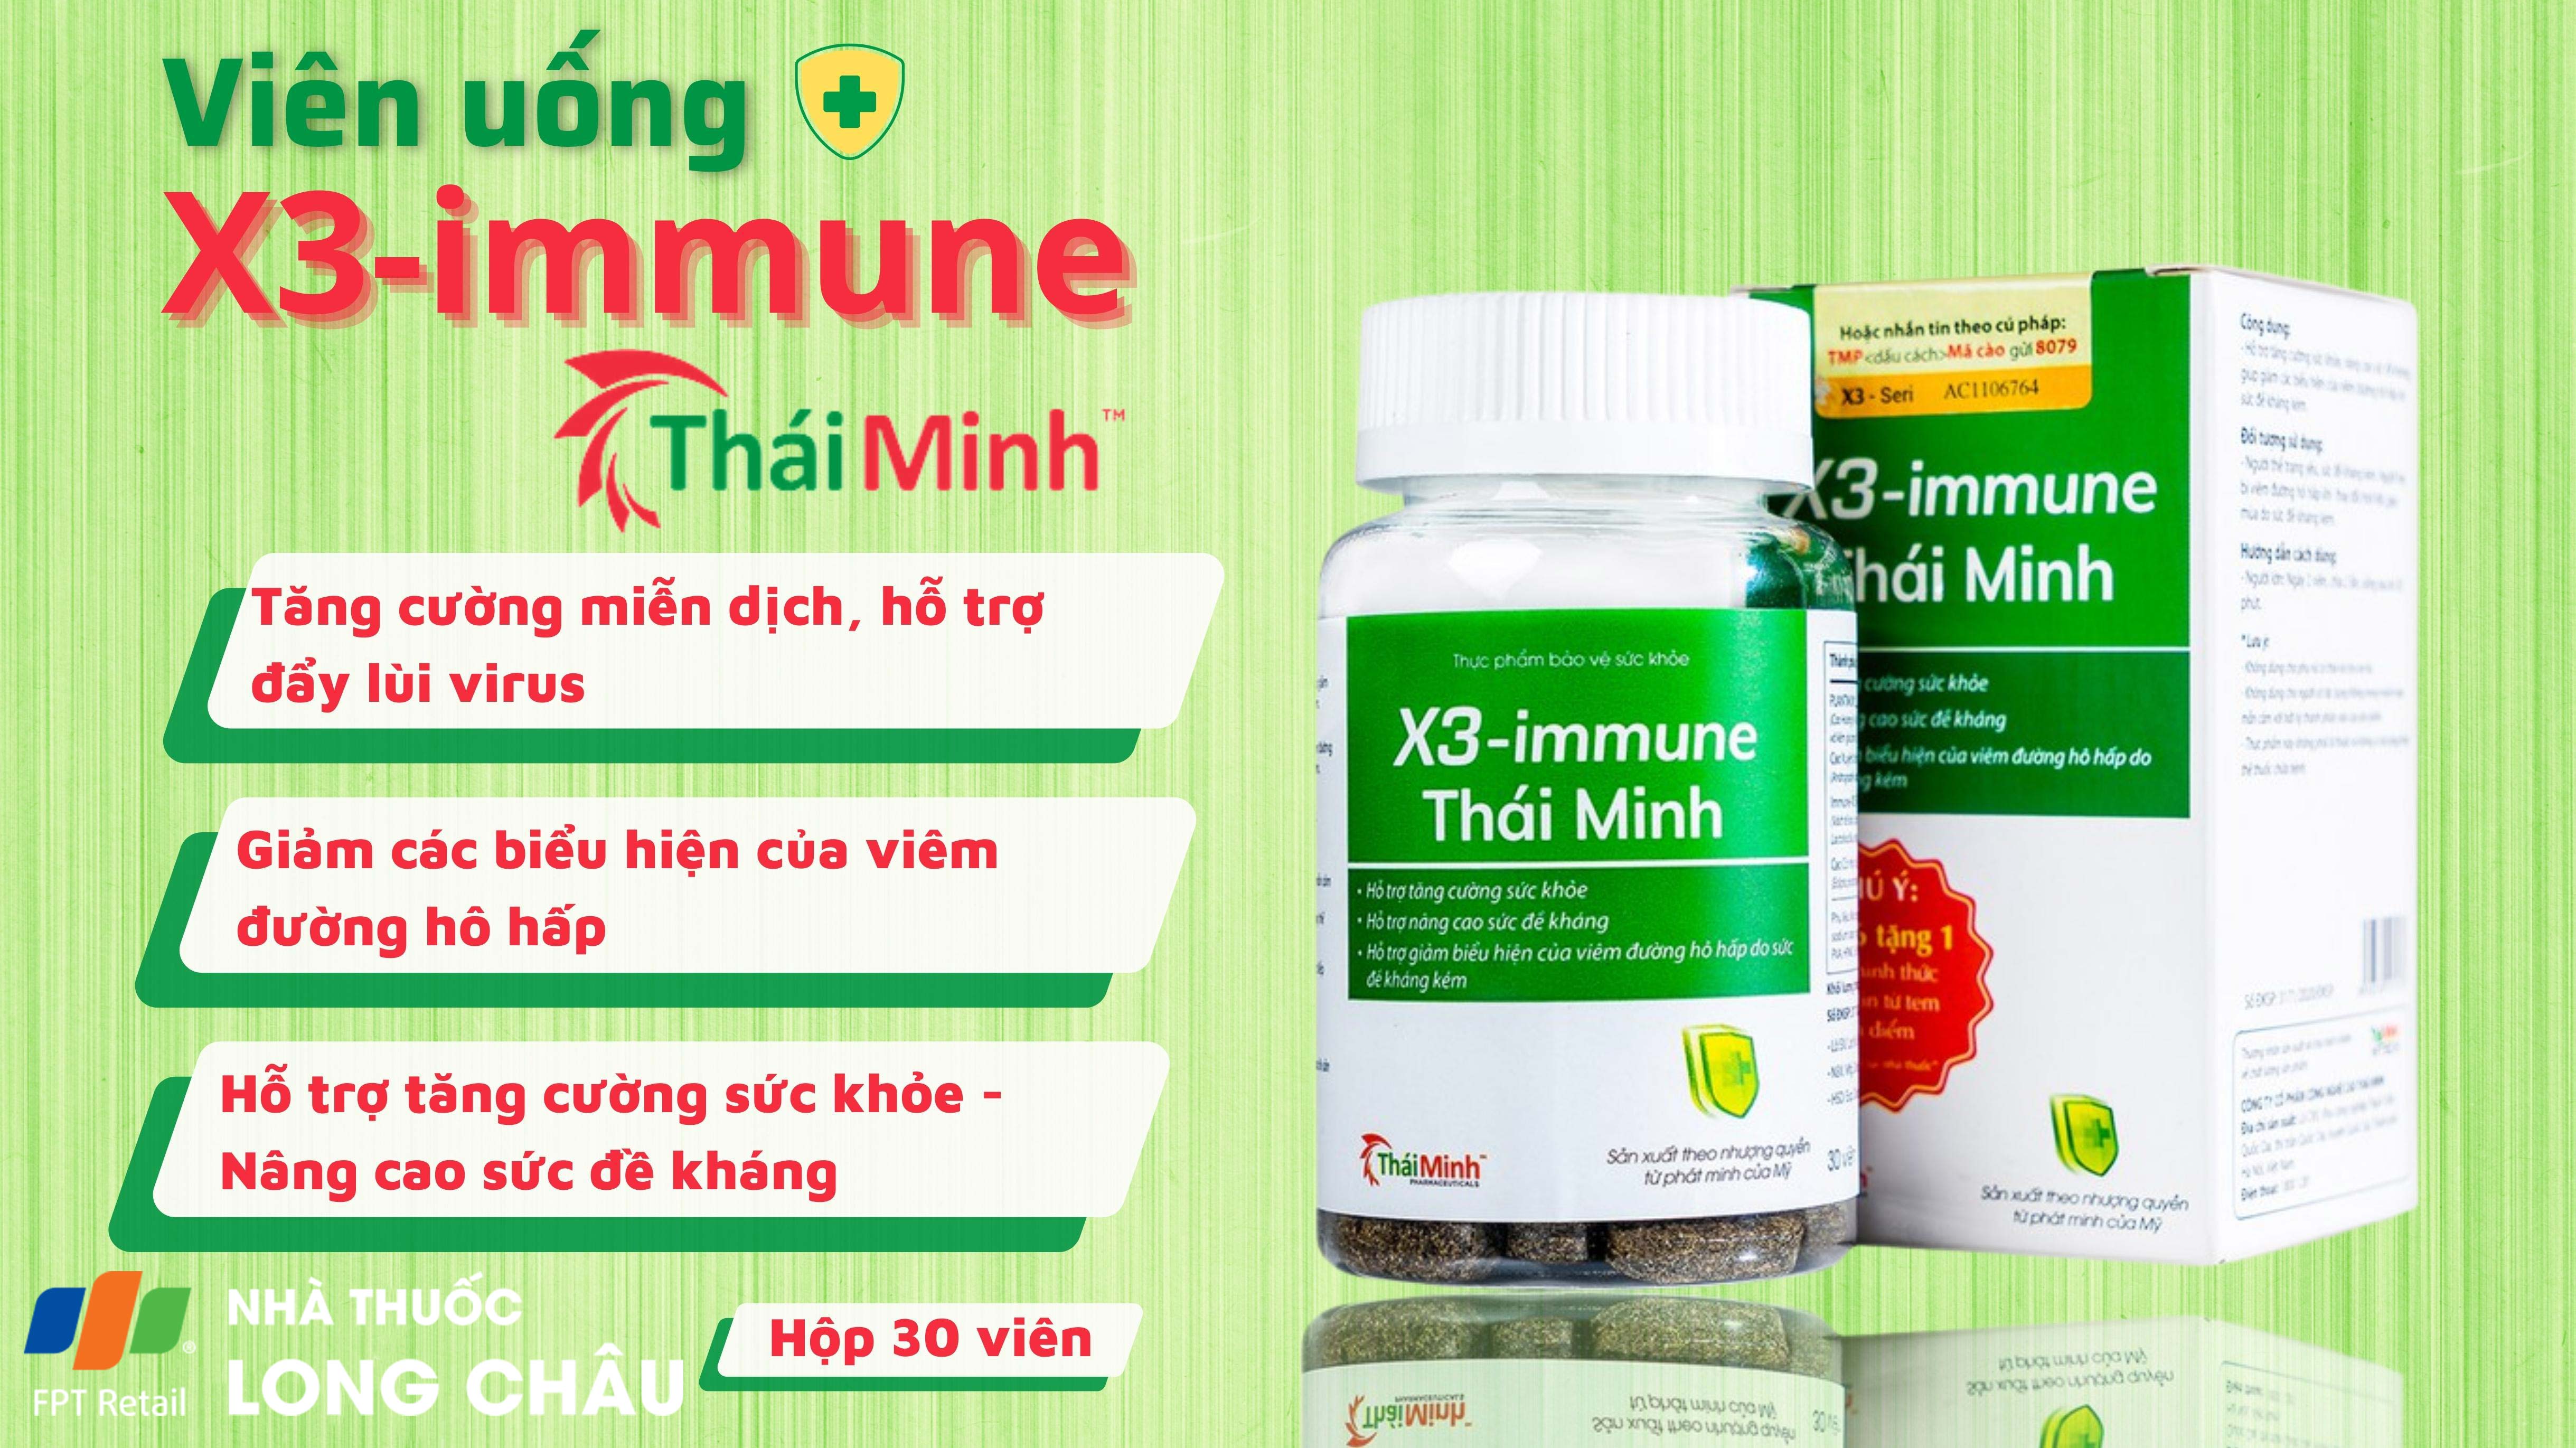 00031656_banner_Viên-uống-X3-immune-Thái-Minh-hỗ-trợ-tăng-cường-sức-khỏe.jpg